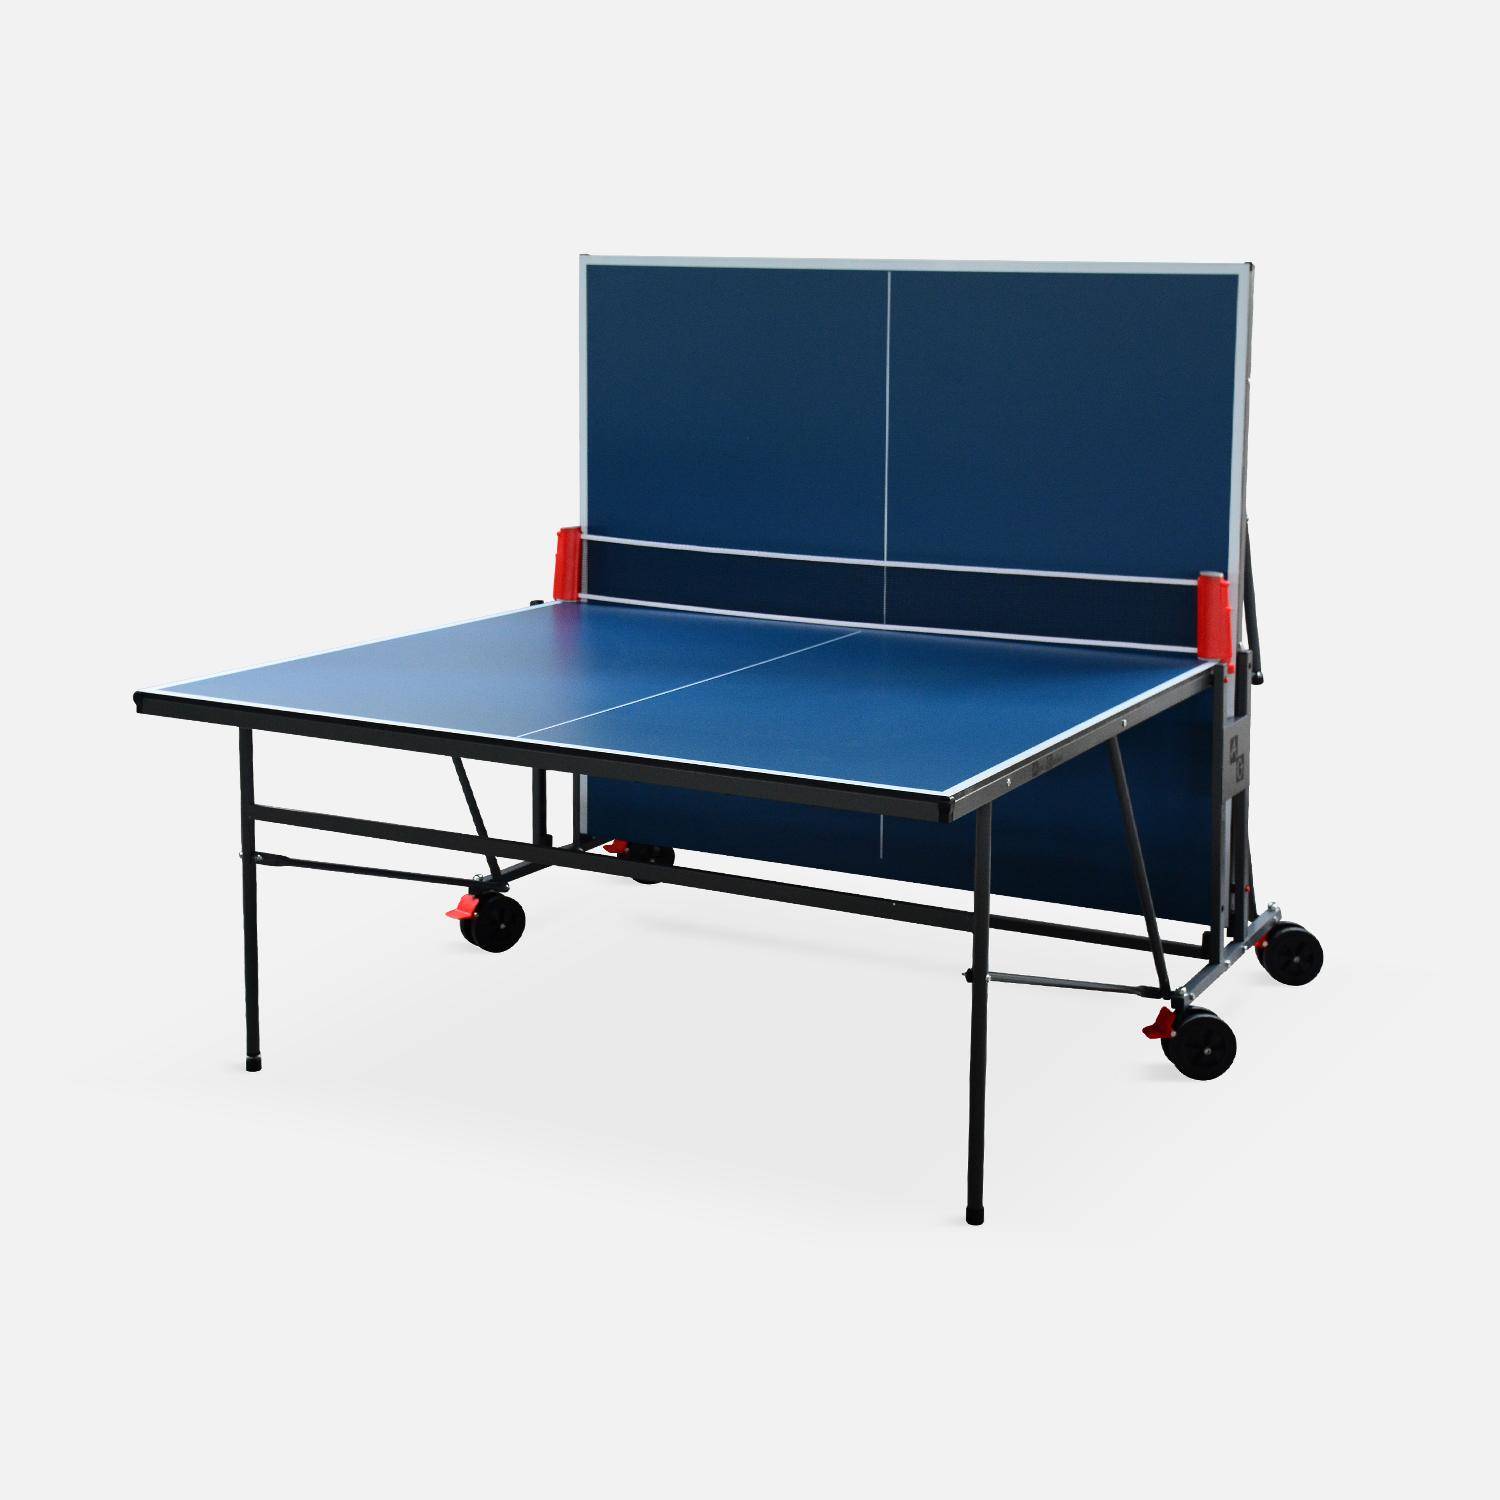 Table de ping pong INDOOR bleue, avec 2 raquettes et 3 balles, pour utilisation intérieure, sport tennis de table Photo2